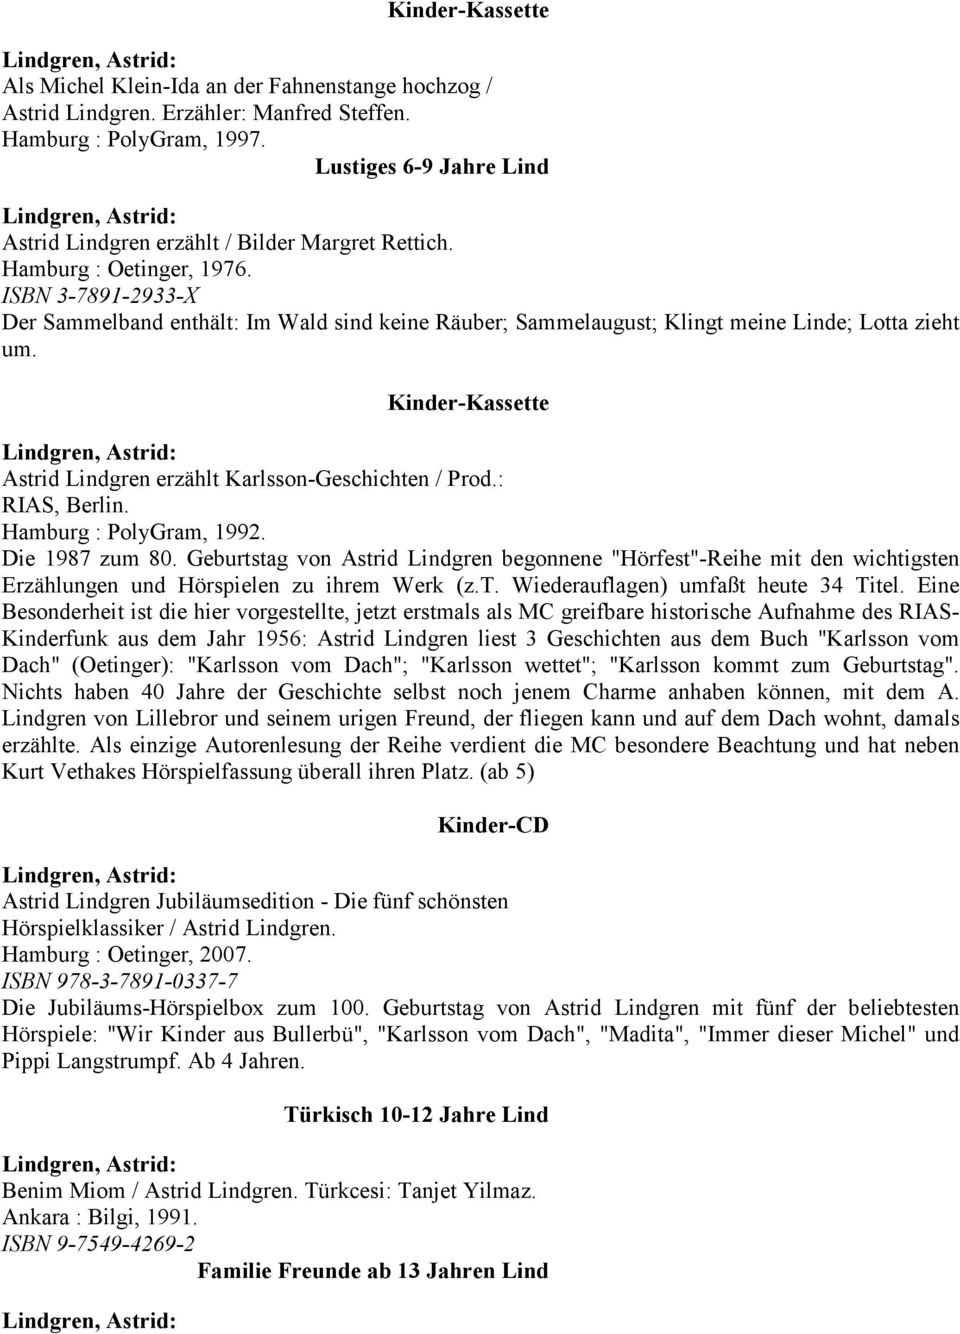 : RIAS, Berlin. Hamburg : PolyGram, 1992. Die 1987 zum 80. Geburtstag von Astrid Lindgren begonnene "Hörfest"-Reihe mit den wichtigsten Erzählungen und Hörspielen zu ihrem Werk (z.t. Wiederauflagen) umfaßt heute 34 Titel.